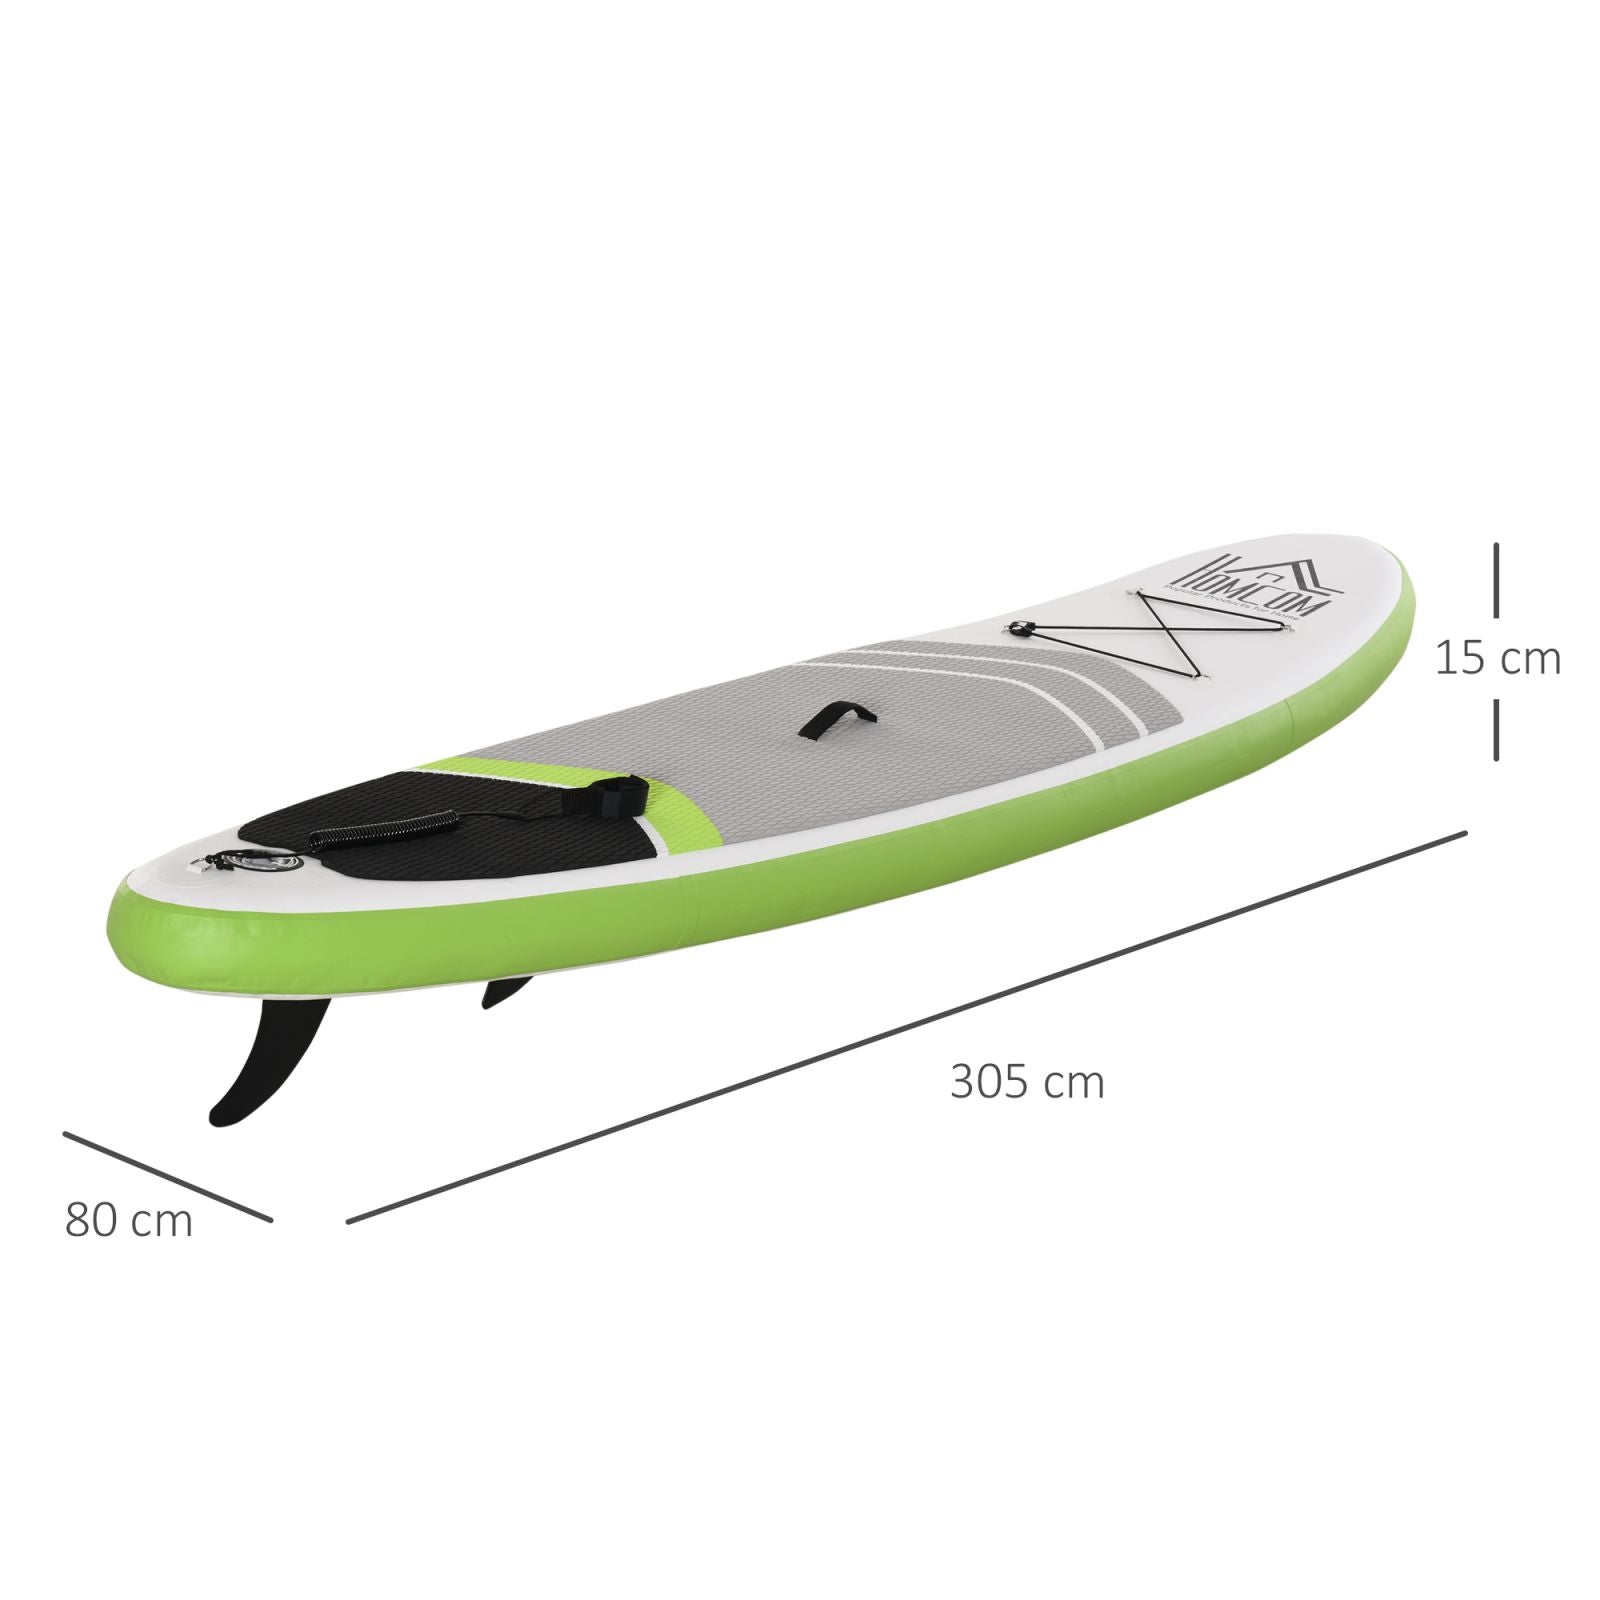 EASYCOMFORT Tavola SUP Gonfiabile con Accessori Inclusi, Tavola da Surf  Stand Up Paddle Board per Adulti e Teenager, 305x75x15cm Verde e Bianco